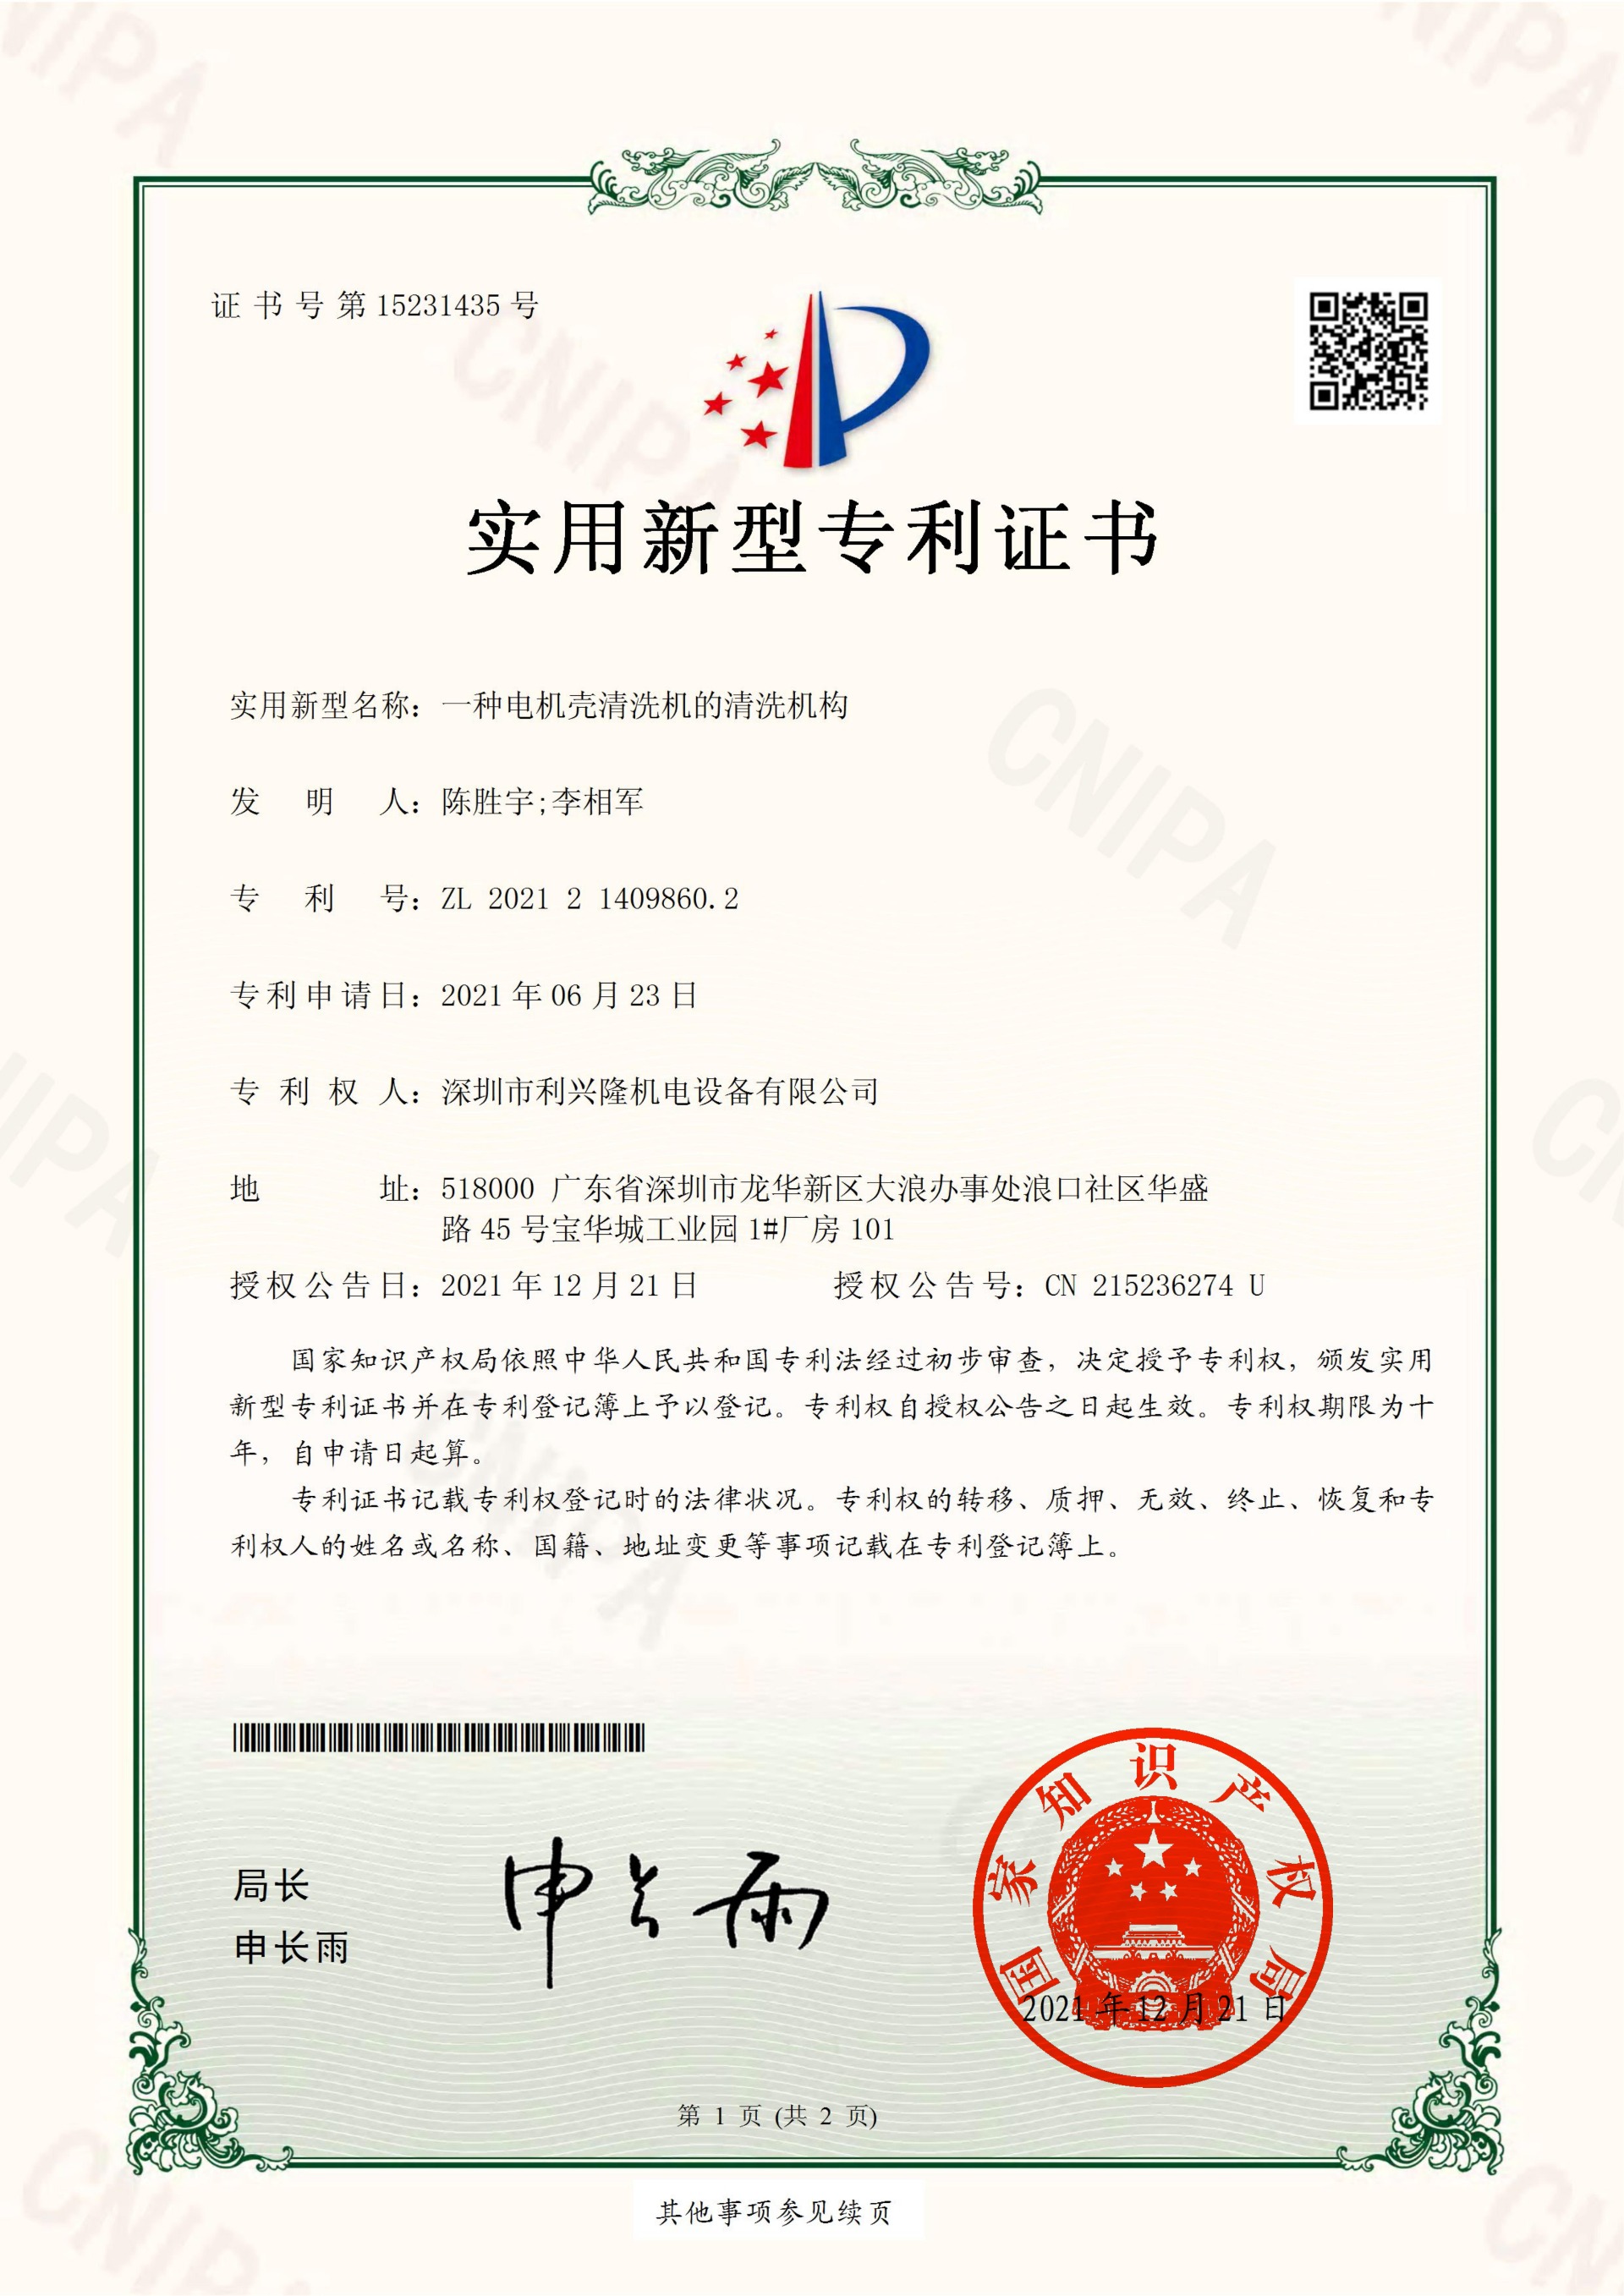 實用新型專利證書  一種電機殼清洗機的清洗機構-深圳市利興隆機電設備有限公司_00